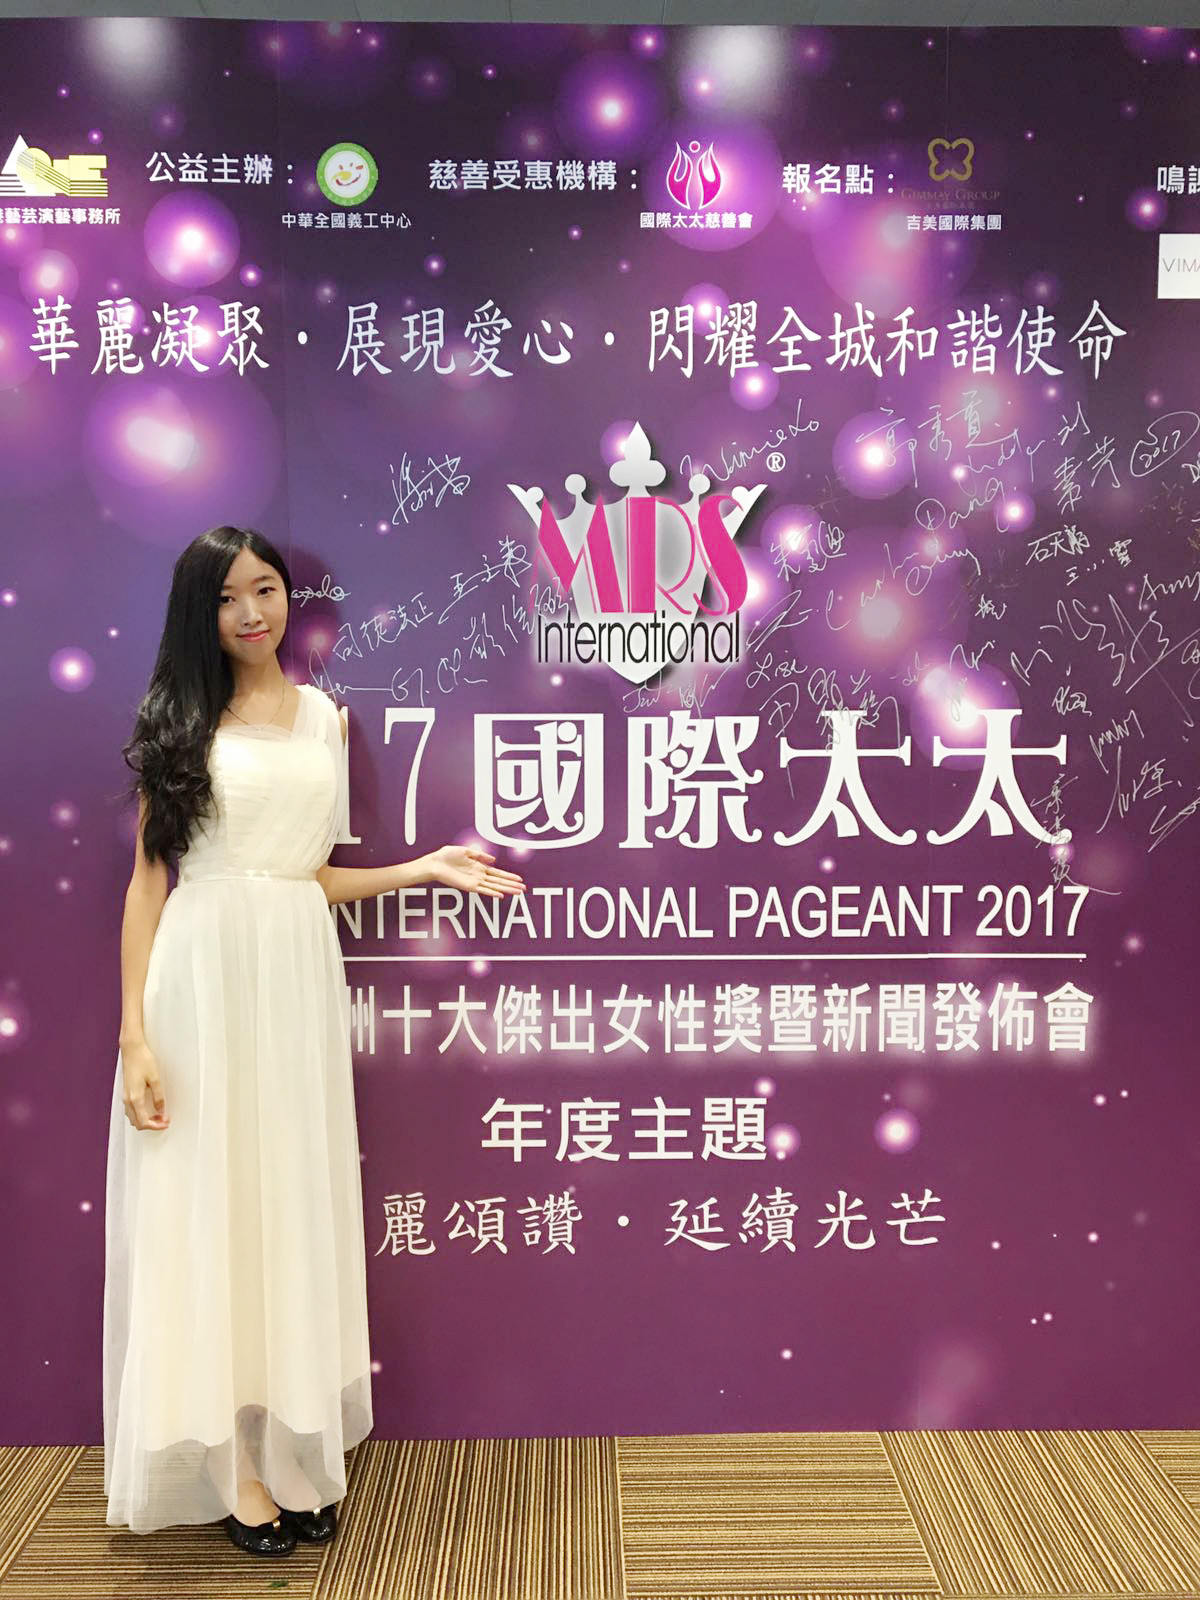 演藝人Angela劉穎斯工作紀錄: 2017國際太太選舉發佈會禮儀小姐